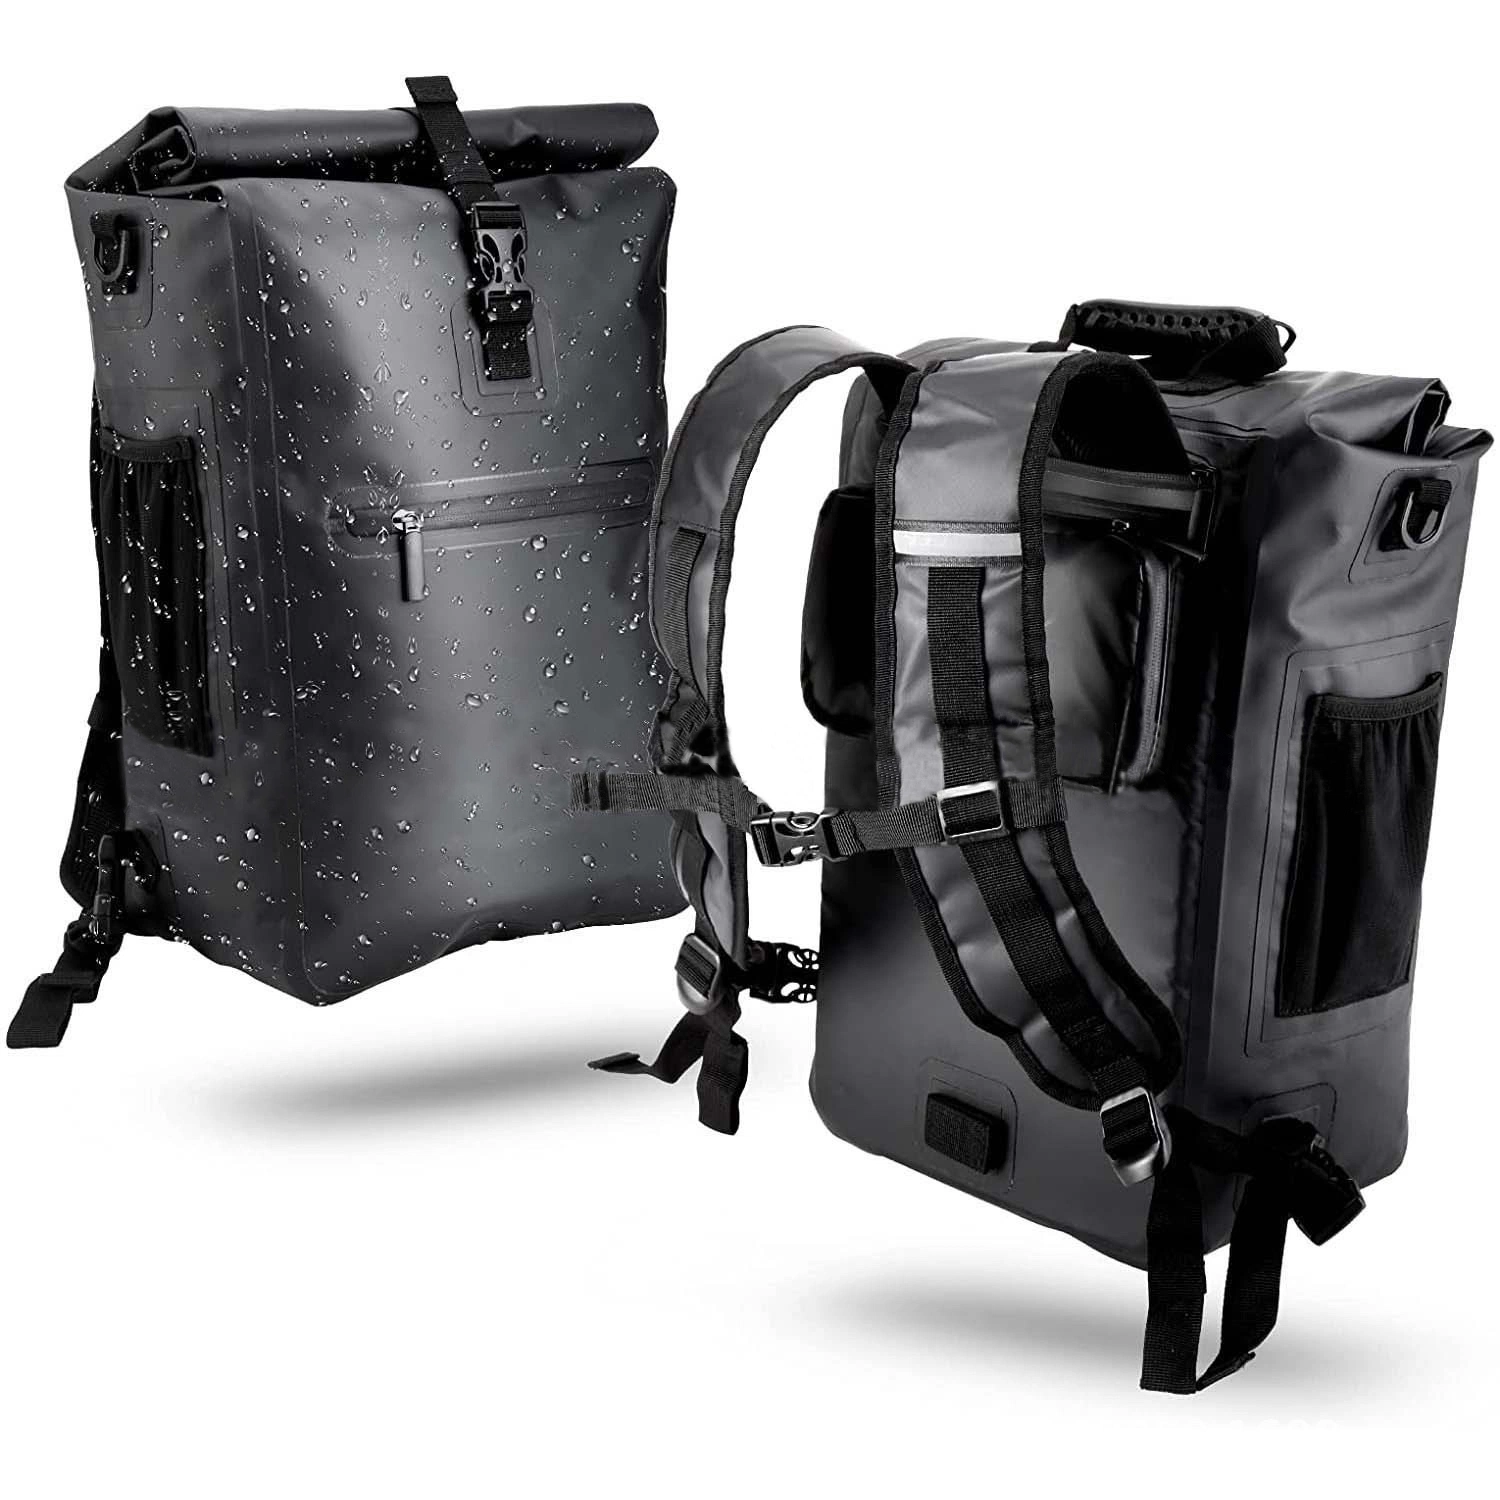 Waterproof Bicycle Luggage Pannier Rack Bag for Commuting